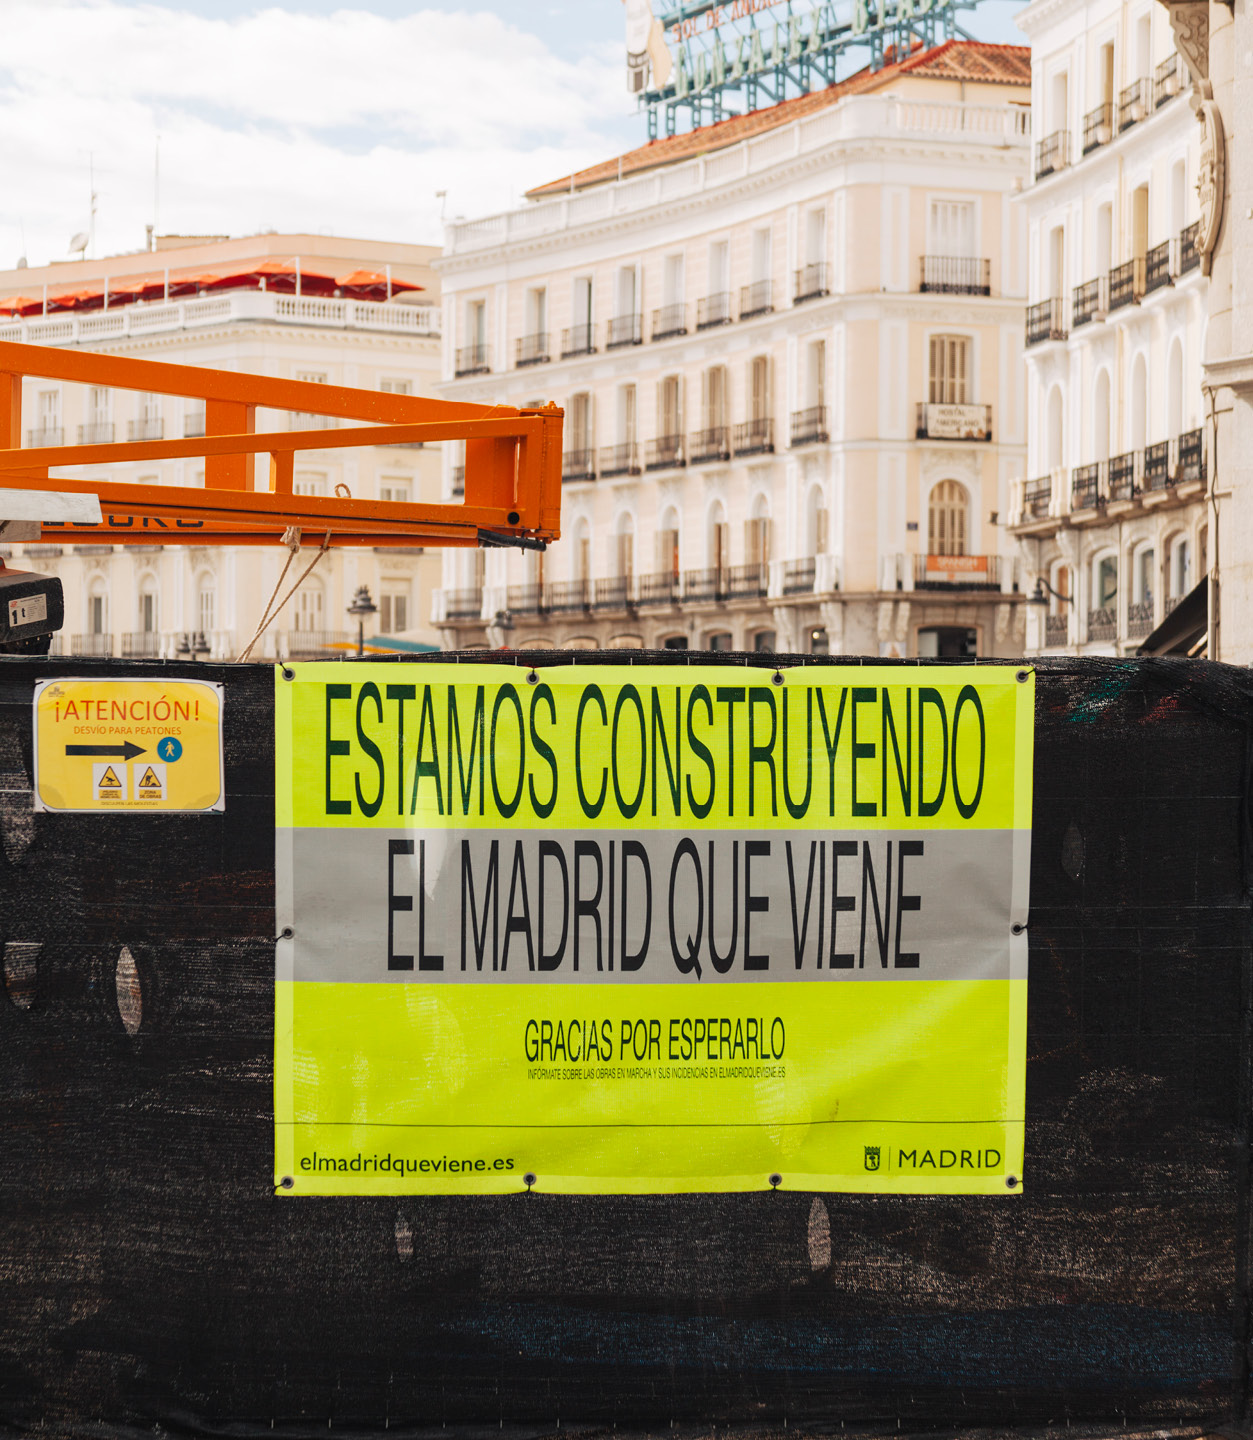 Atipus | Estudi disseny gràfic - Barcelona